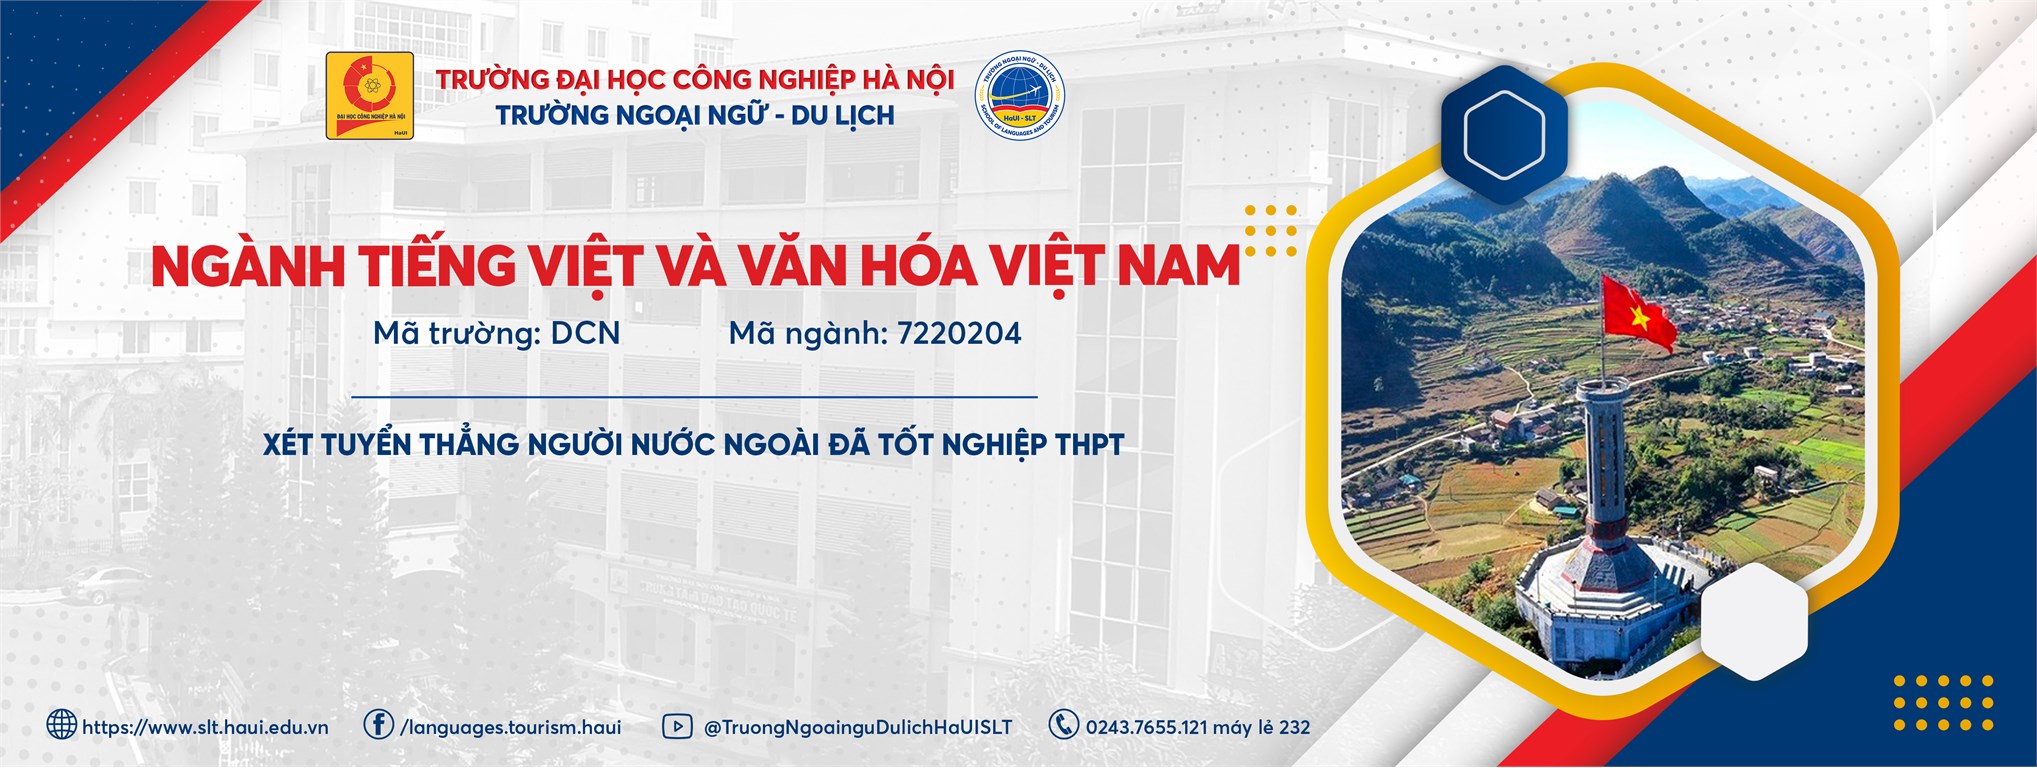 Ngành Tiếng Việt và văn hóa Việt Nam